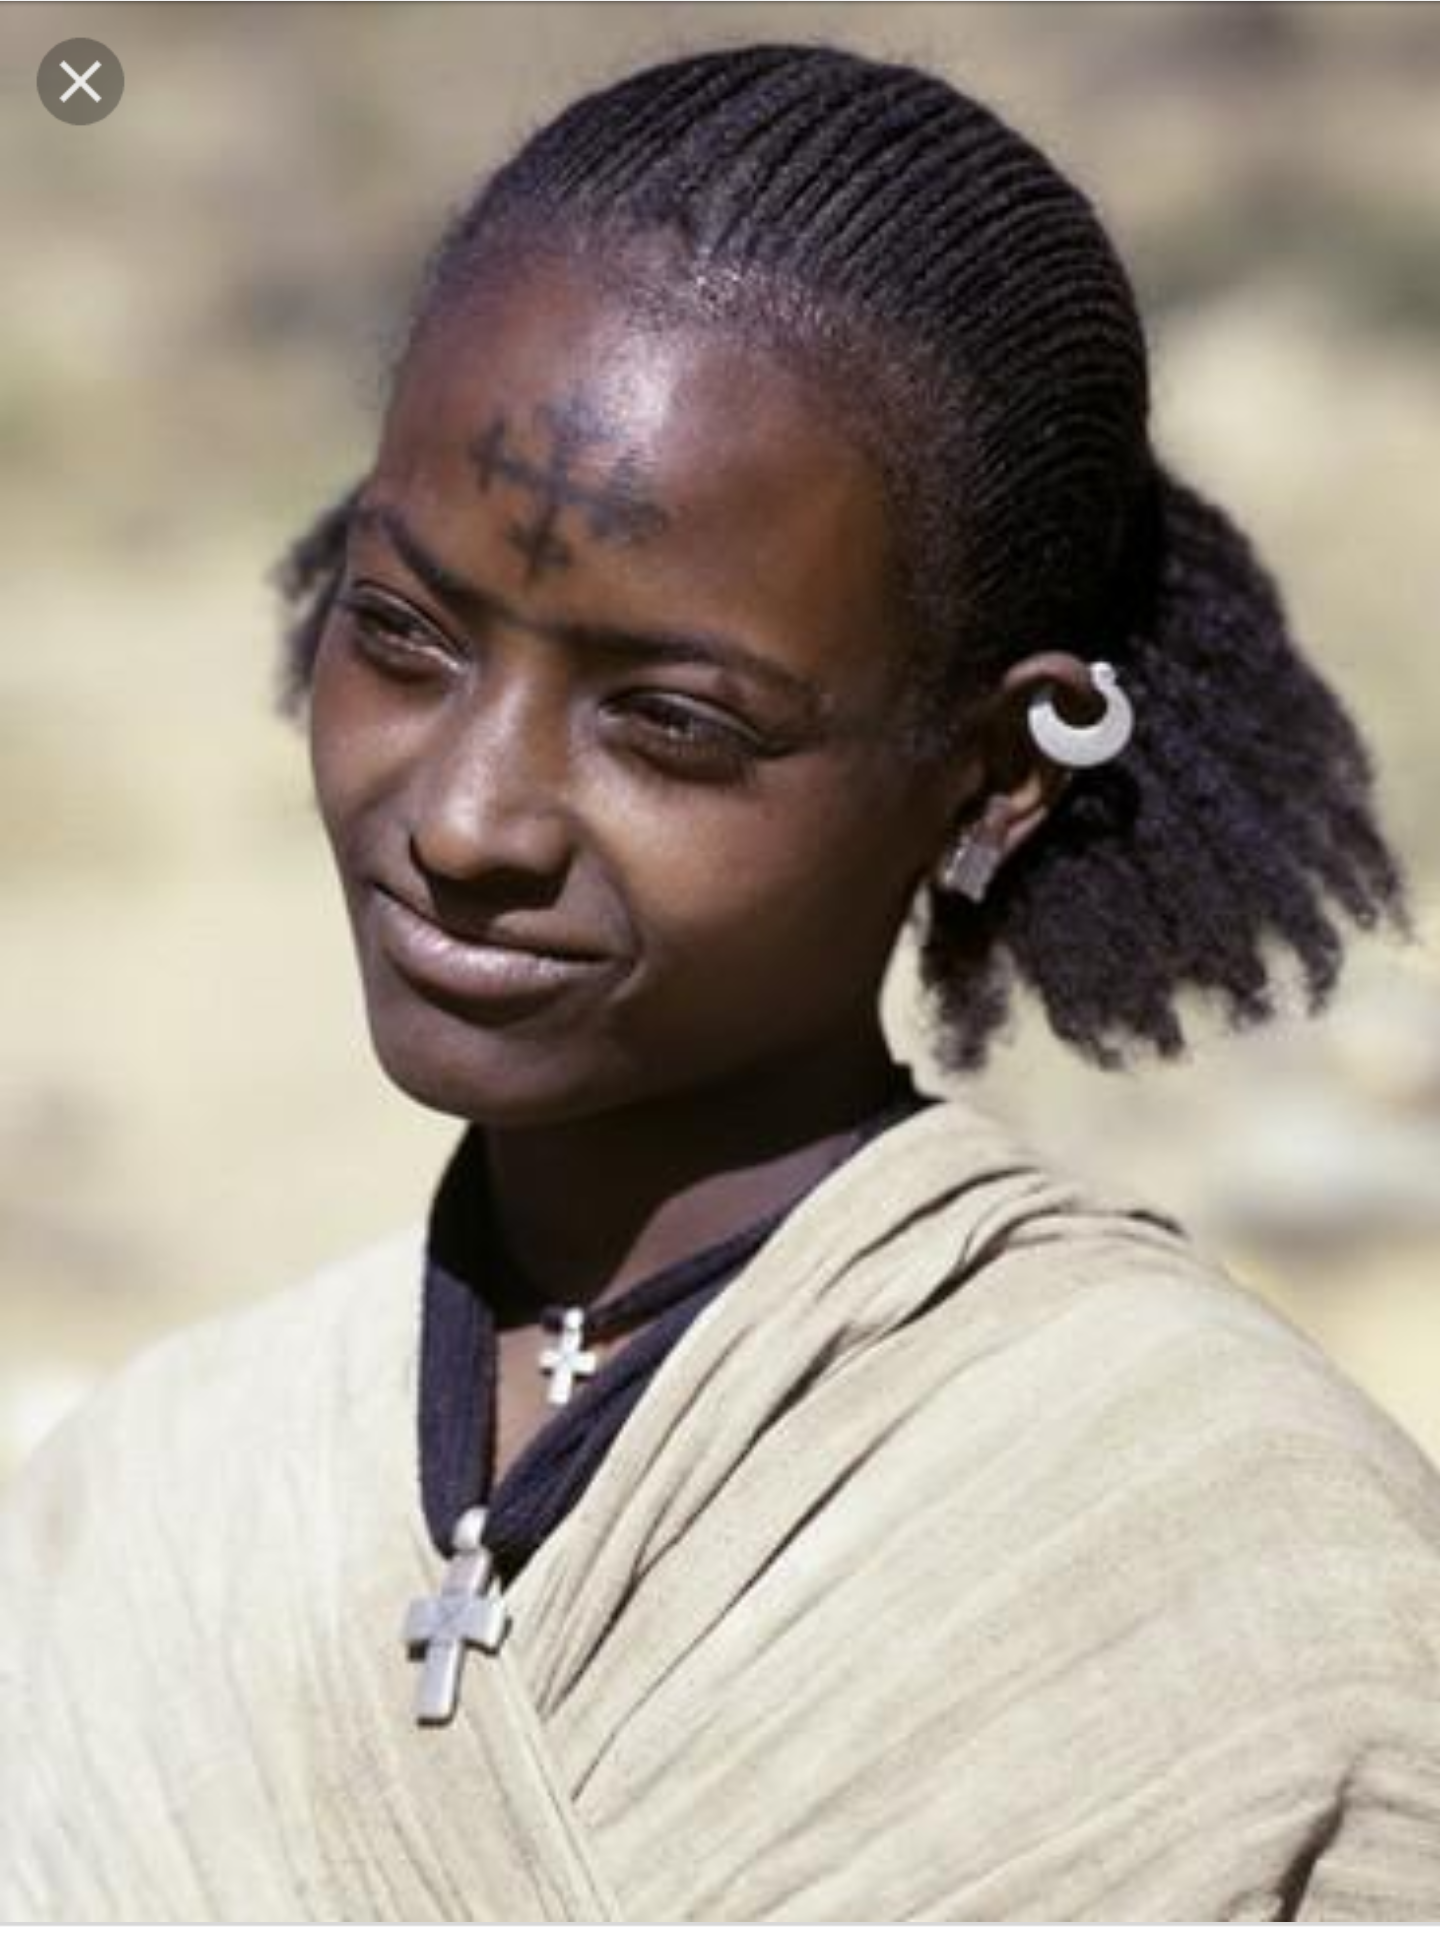 Волосы у негроидной расы. Абиссинцы эфиопы. Амхара Эфиопия. Амхара семиты. Африканцы негроидная раса.